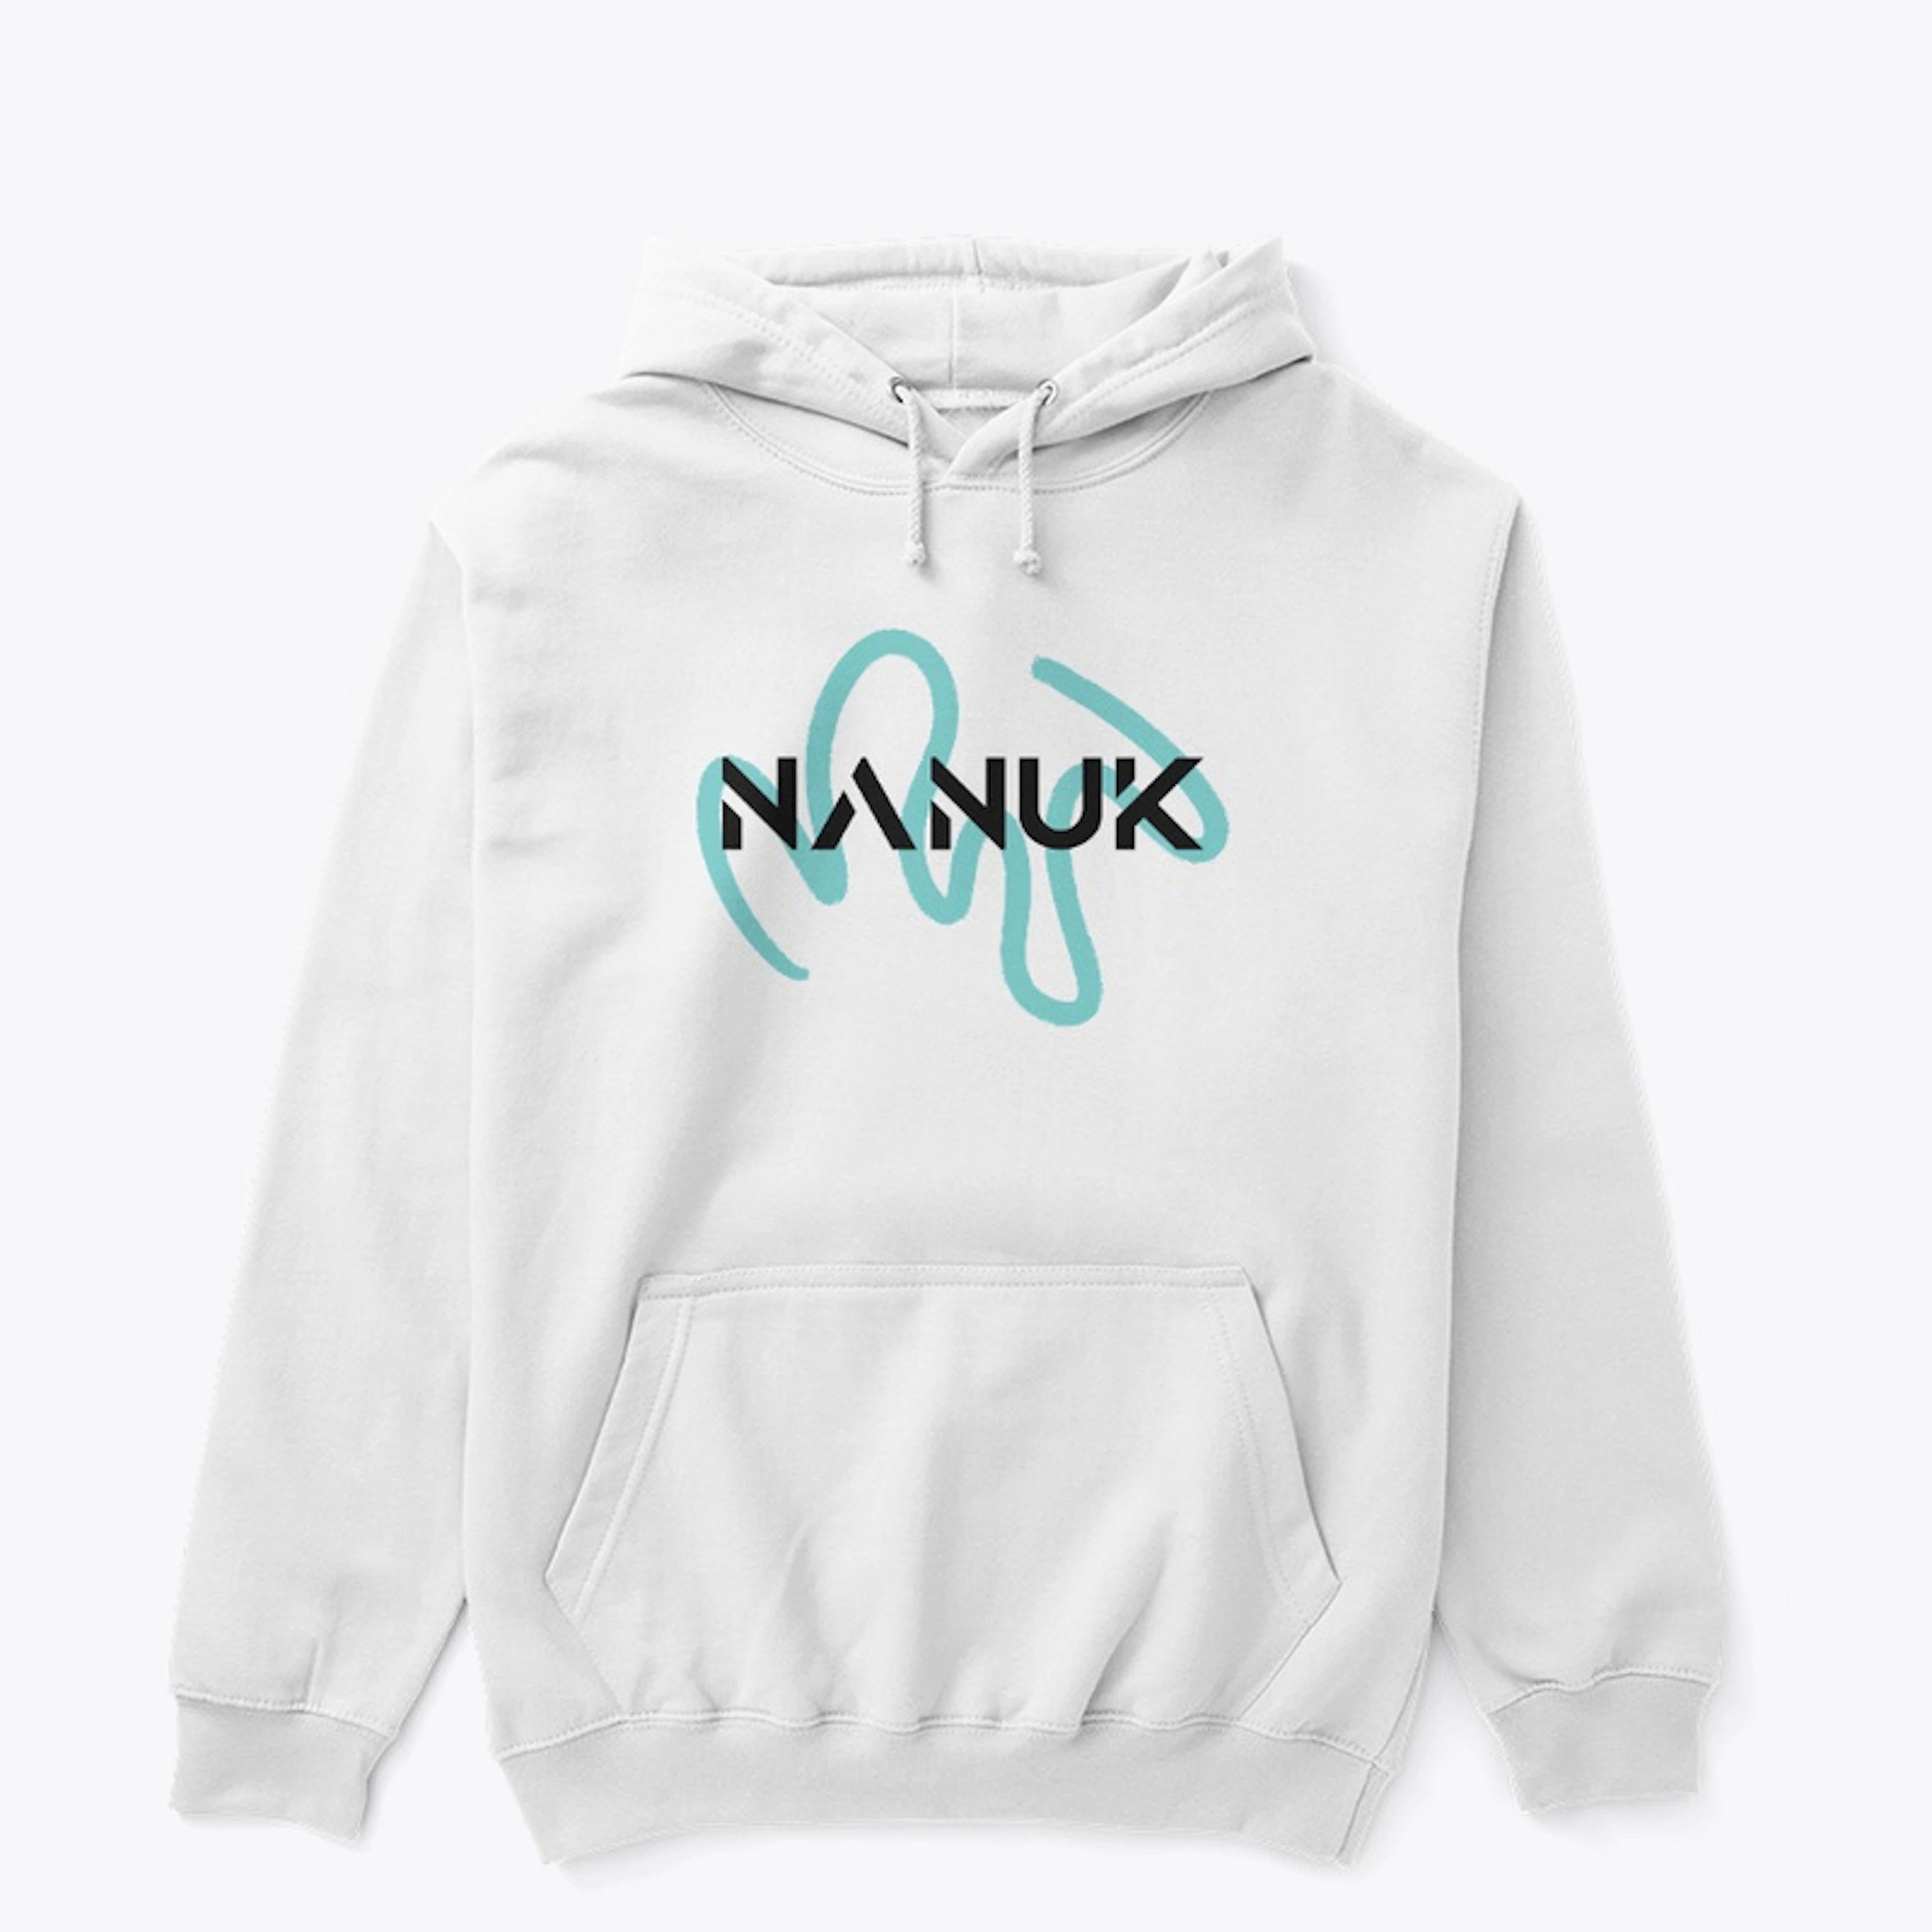 Nanuk's Classic Hoodie - White